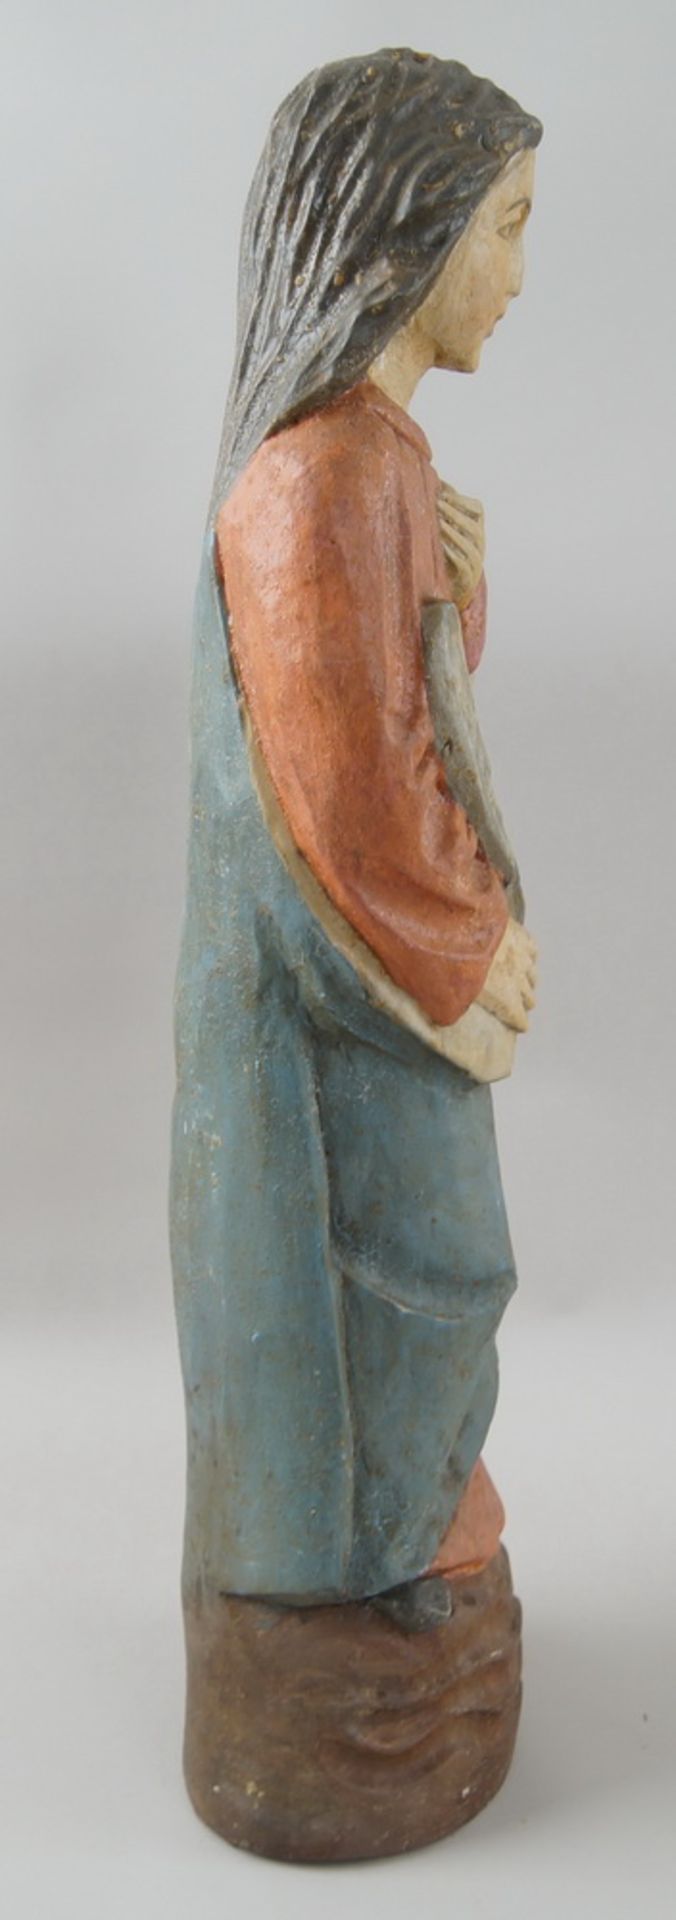 Heiligenskulptur mit Feder in der Hand, Holz geschnitzt und gefasst, H 60 cm - Bild 6 aus 7